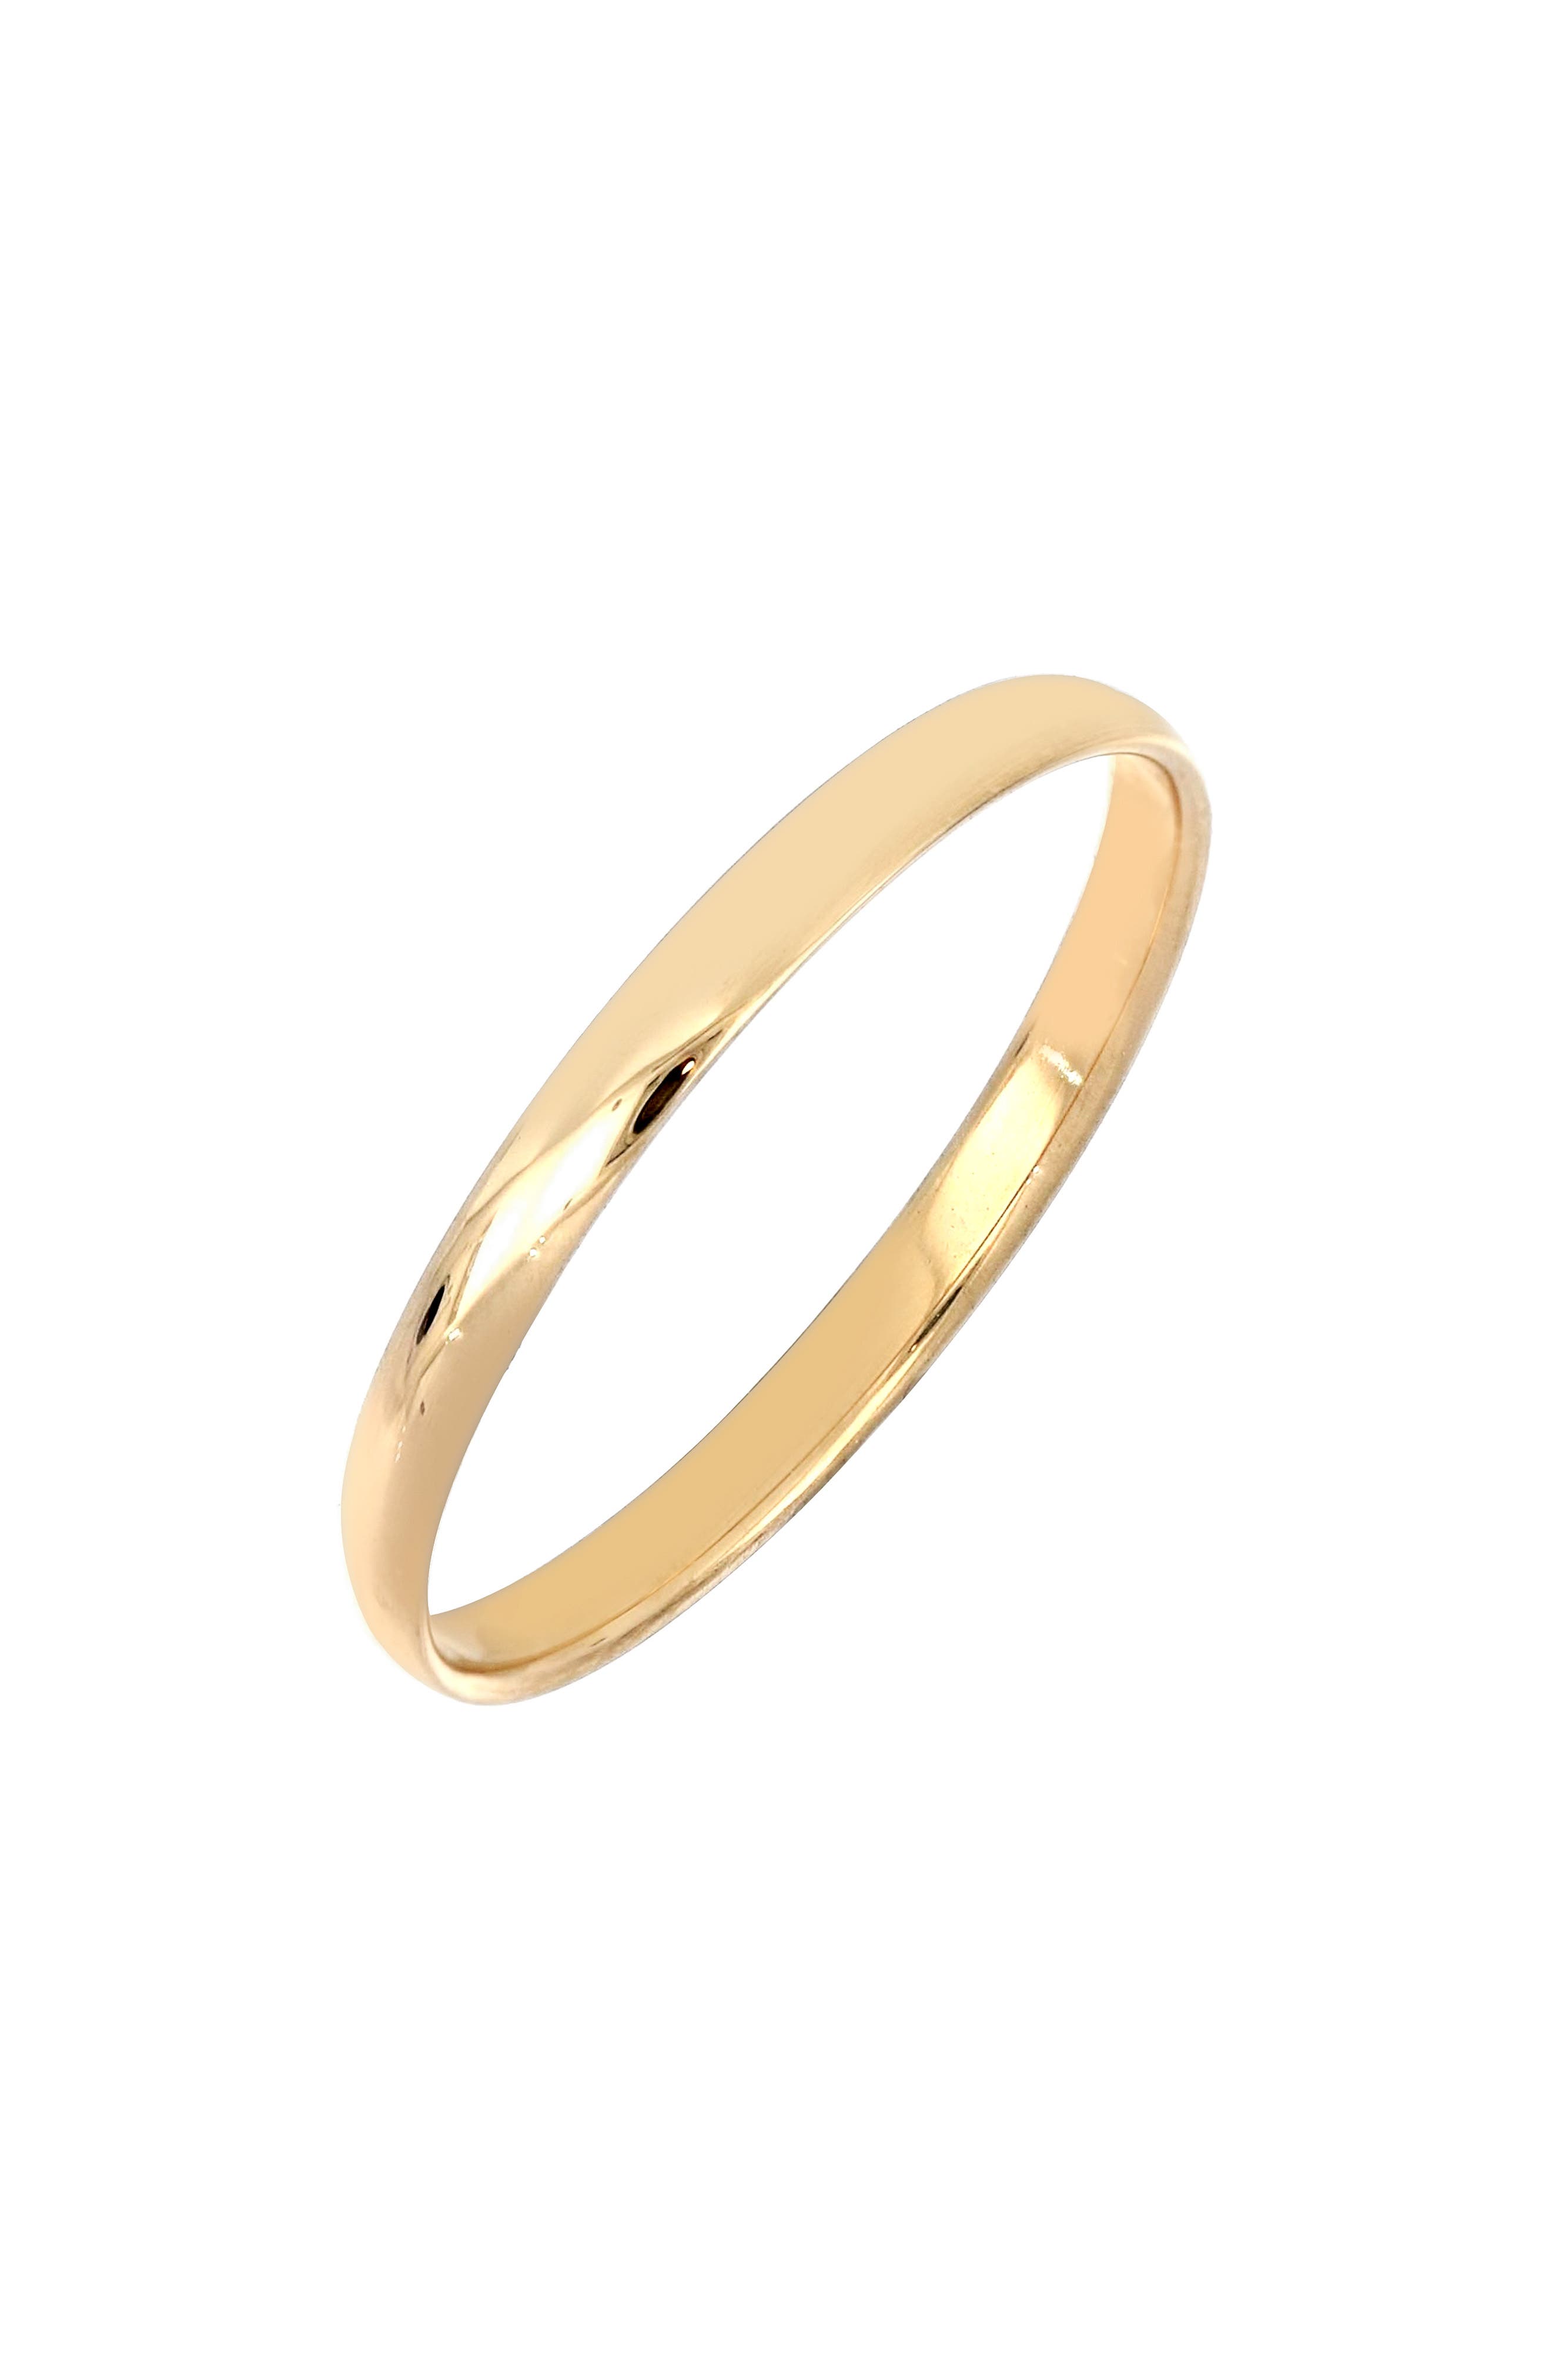 14K Gold Ring Plain Jane Gold Ring Simple 14K Yellow Gold Ring 14 Karat Gold Plain Square Band